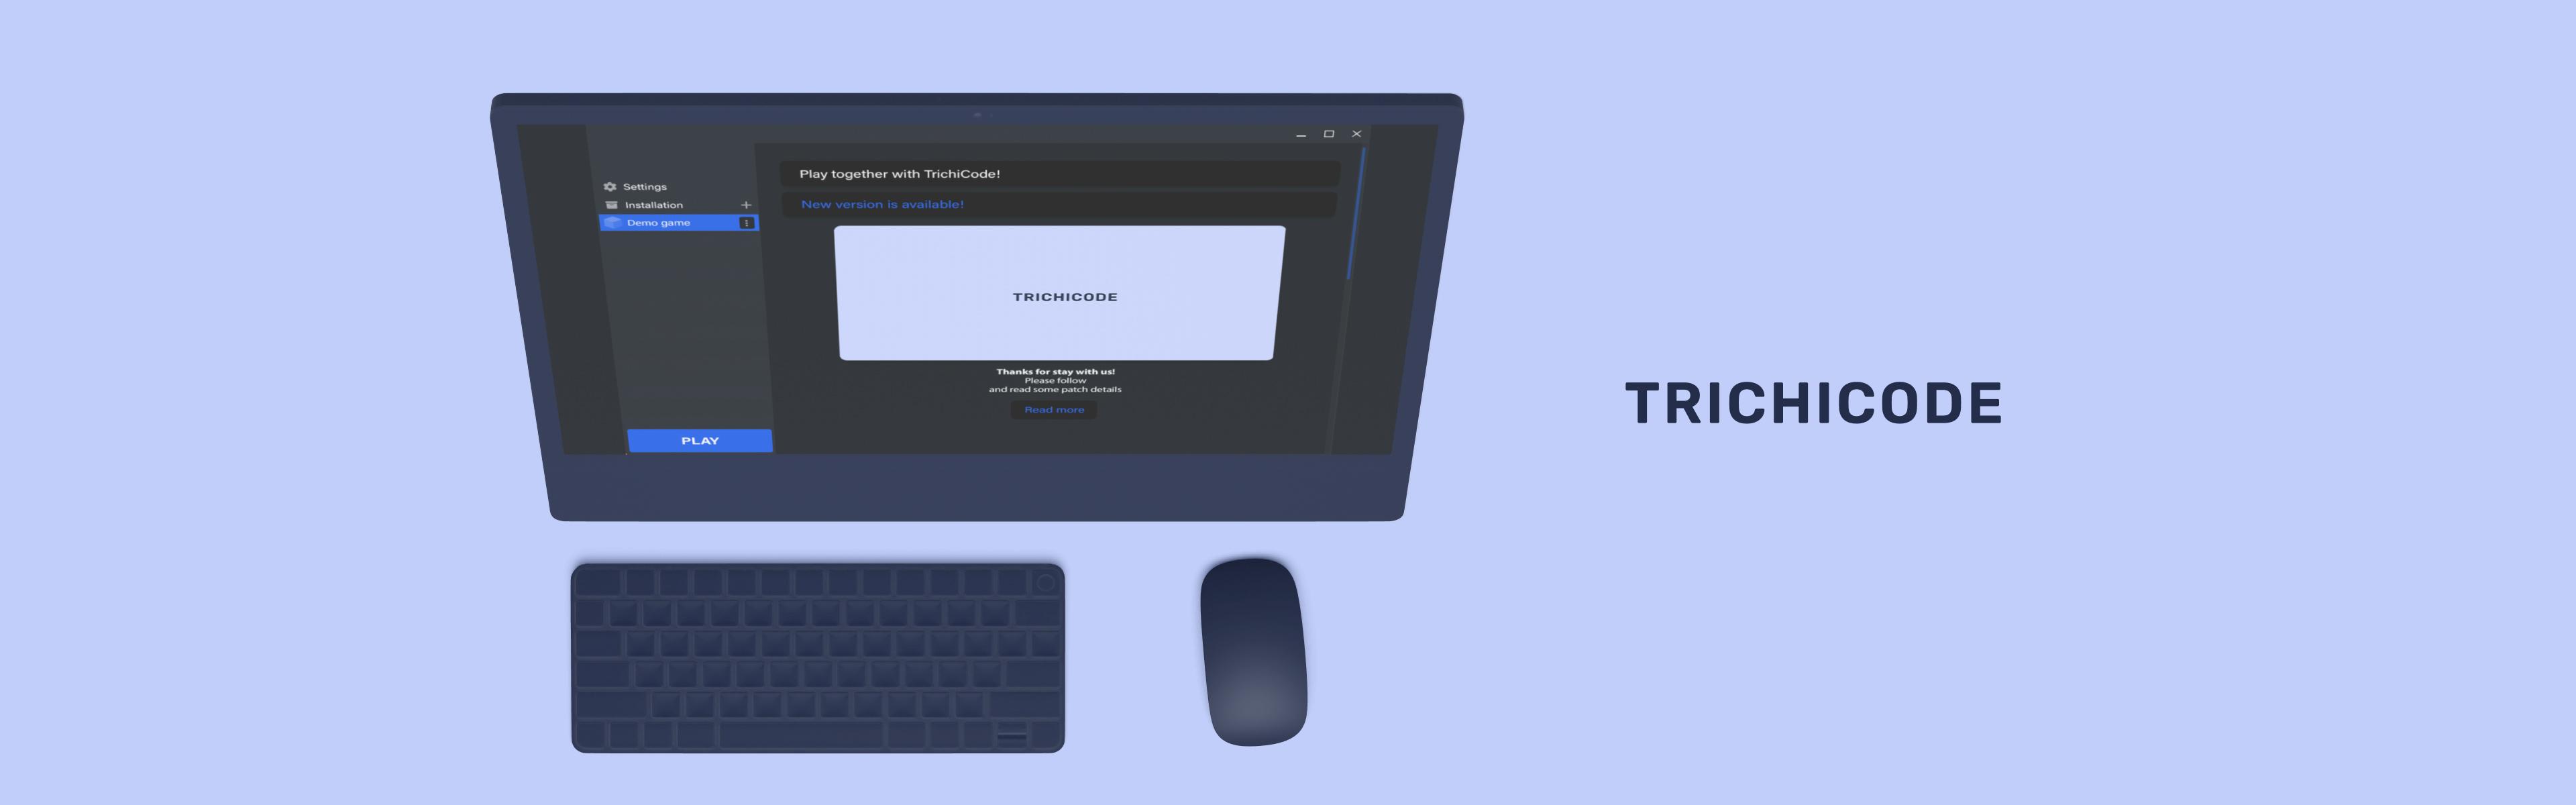 cross-platform-launcher | TrichiCode